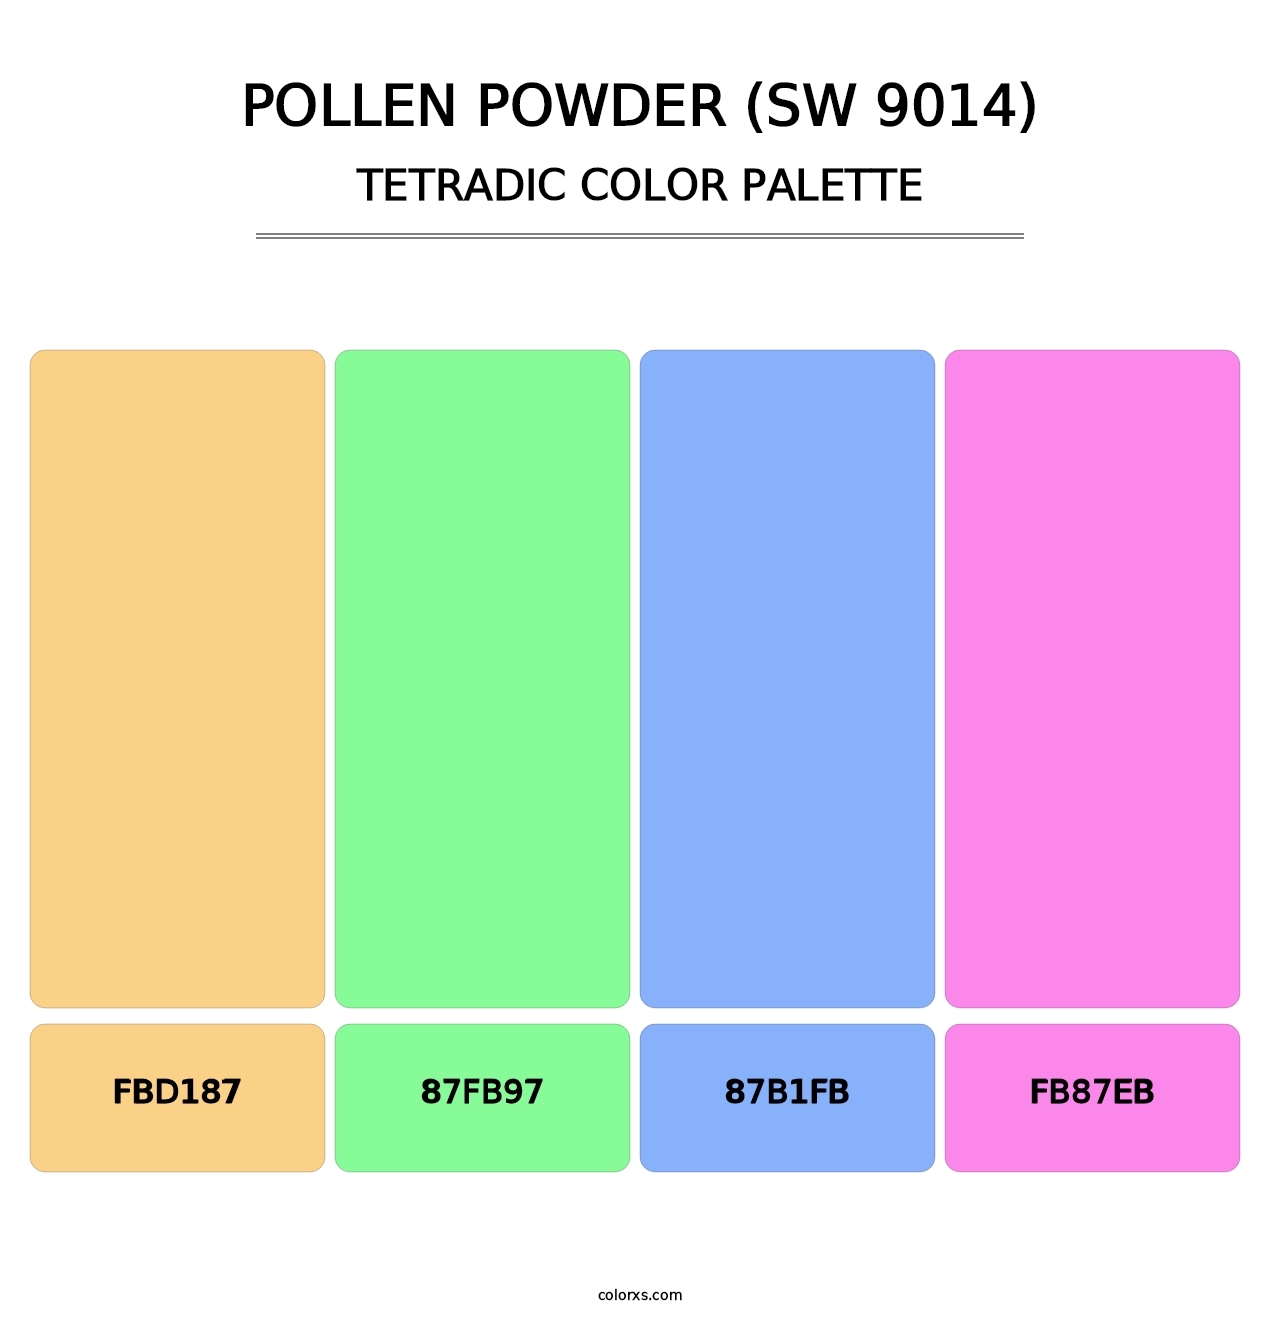 Pollen Powder (SW 9014) - Tetradic Color Palette